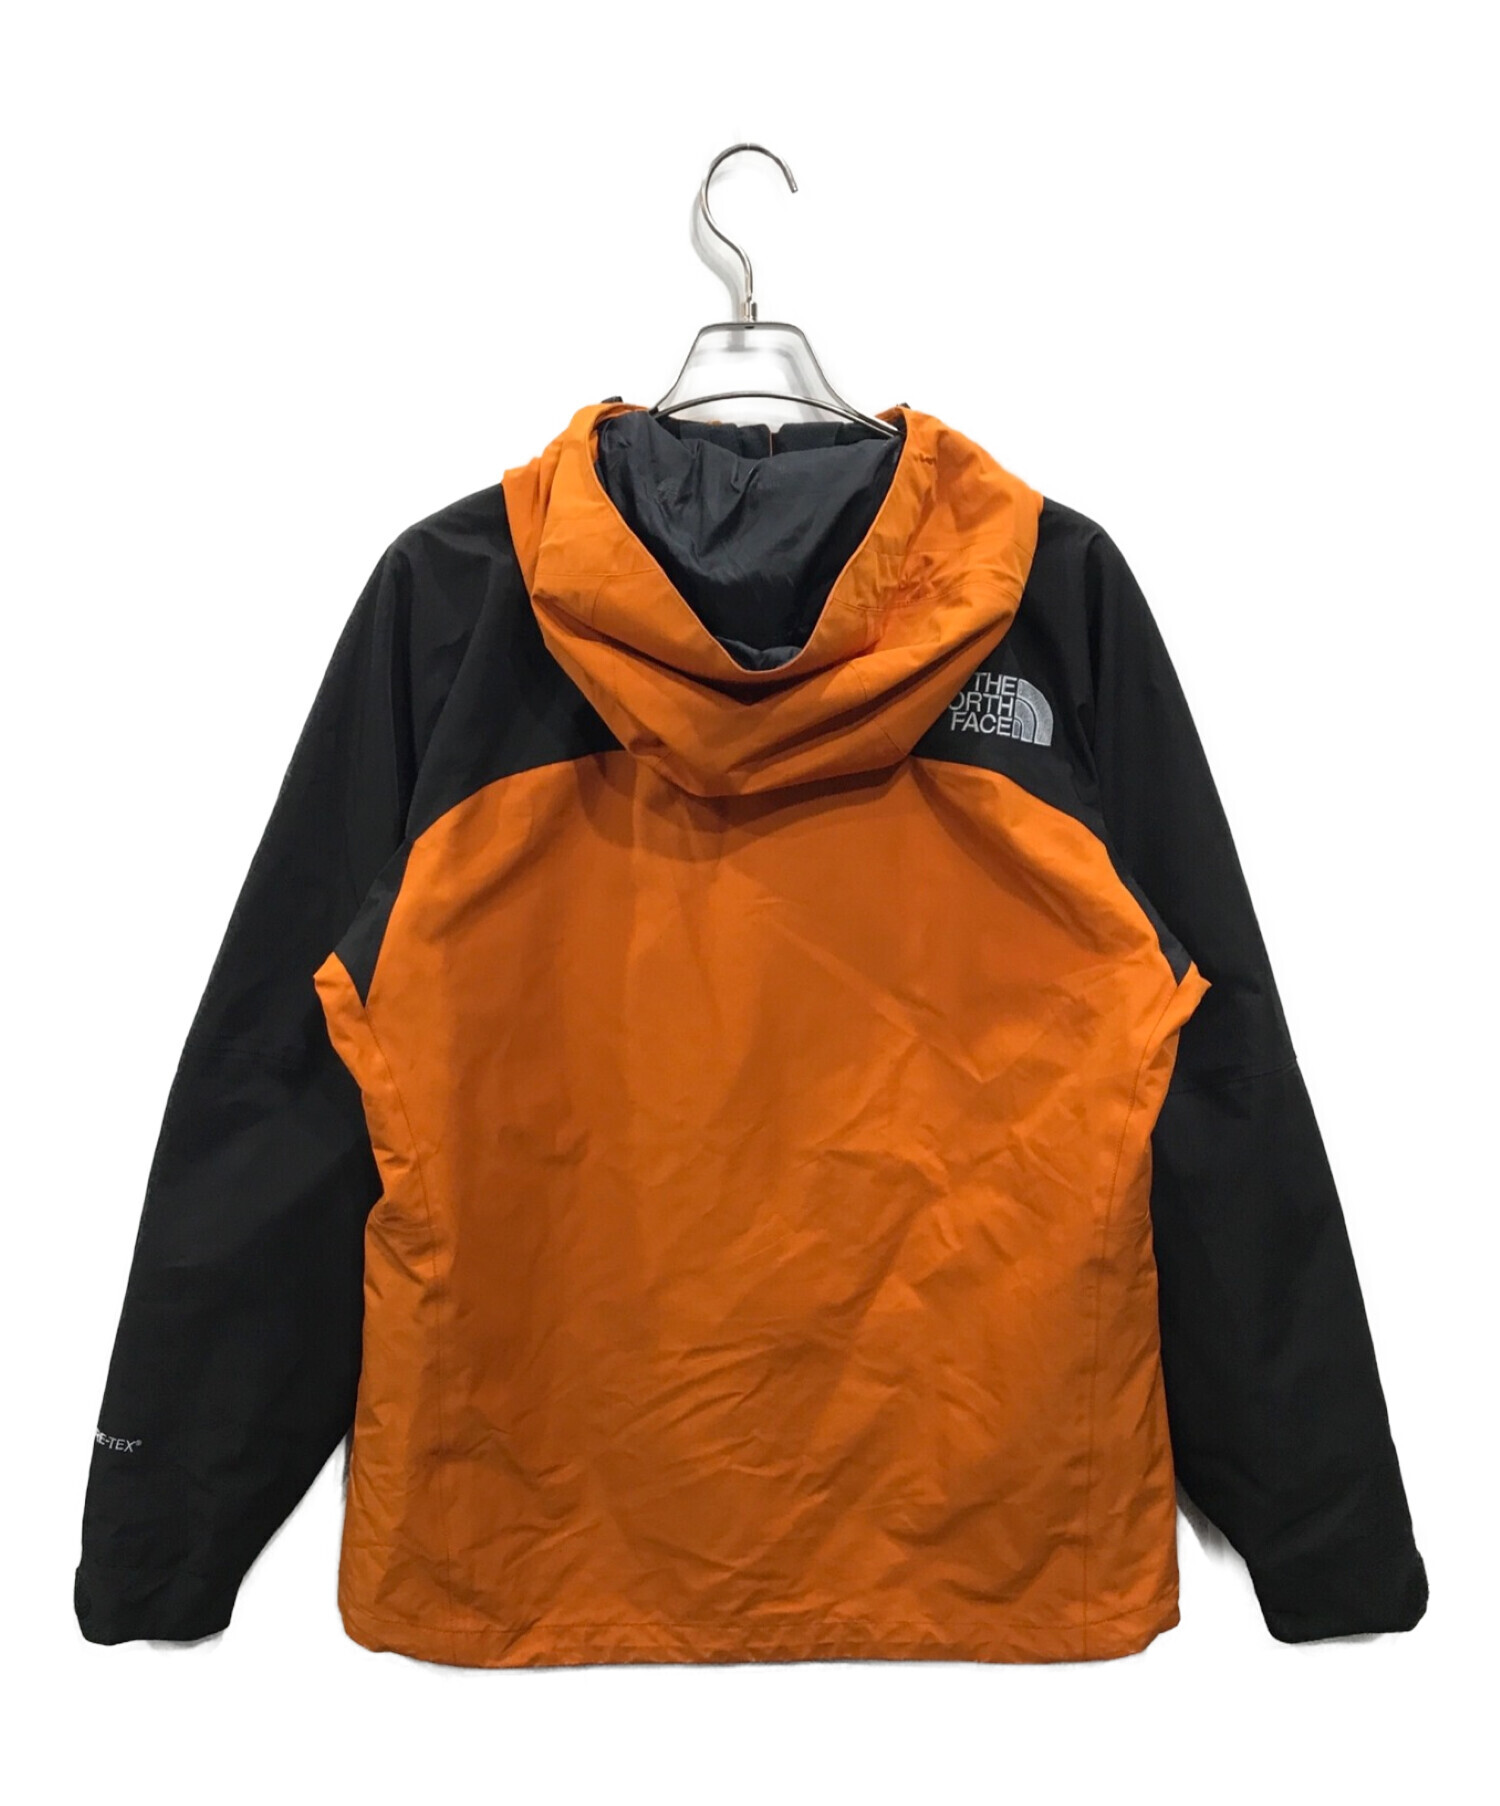 THE NORTH FACE (ザ ノース フェイス) MOUNTAIN JACKET マウンテン ジャケット オレンジ×ブラック サイズ:XL